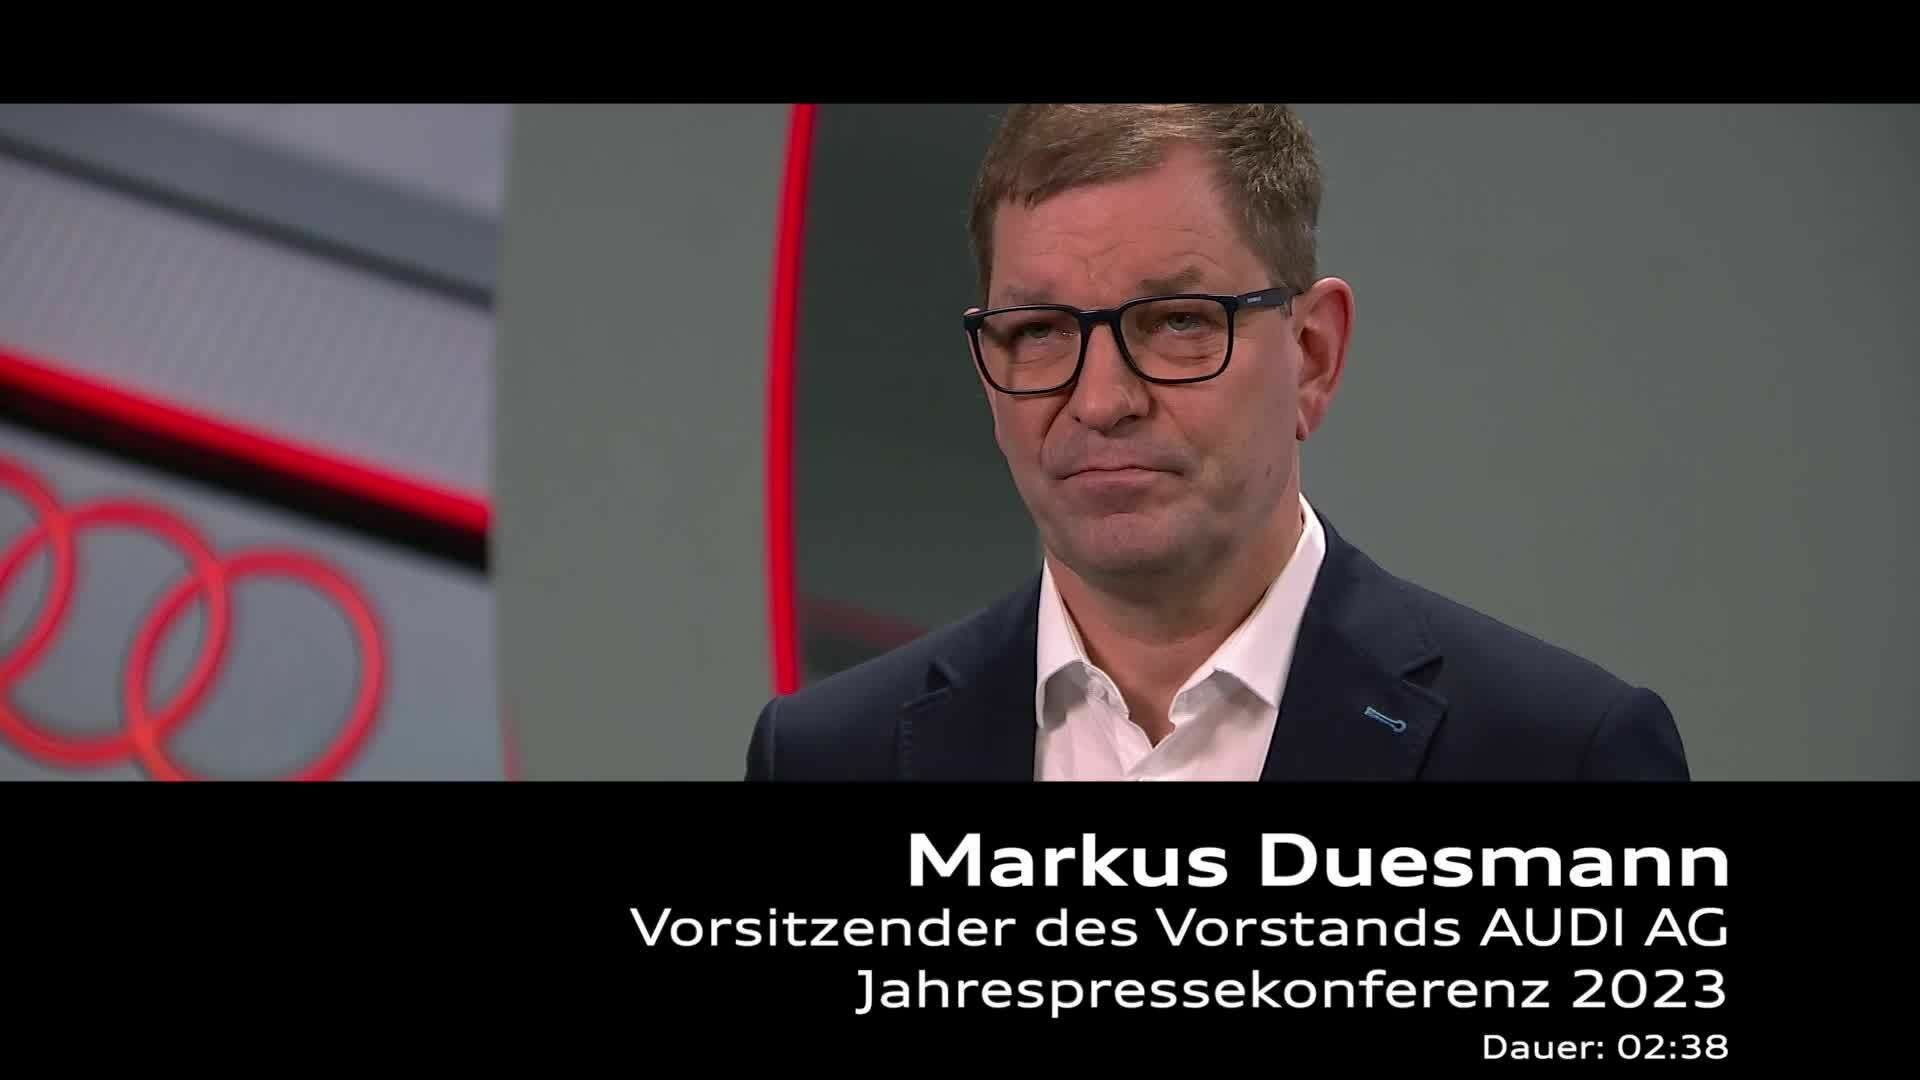 Footage: Statement von Markus Duesmann zur Jahrespressekonferenz 2023